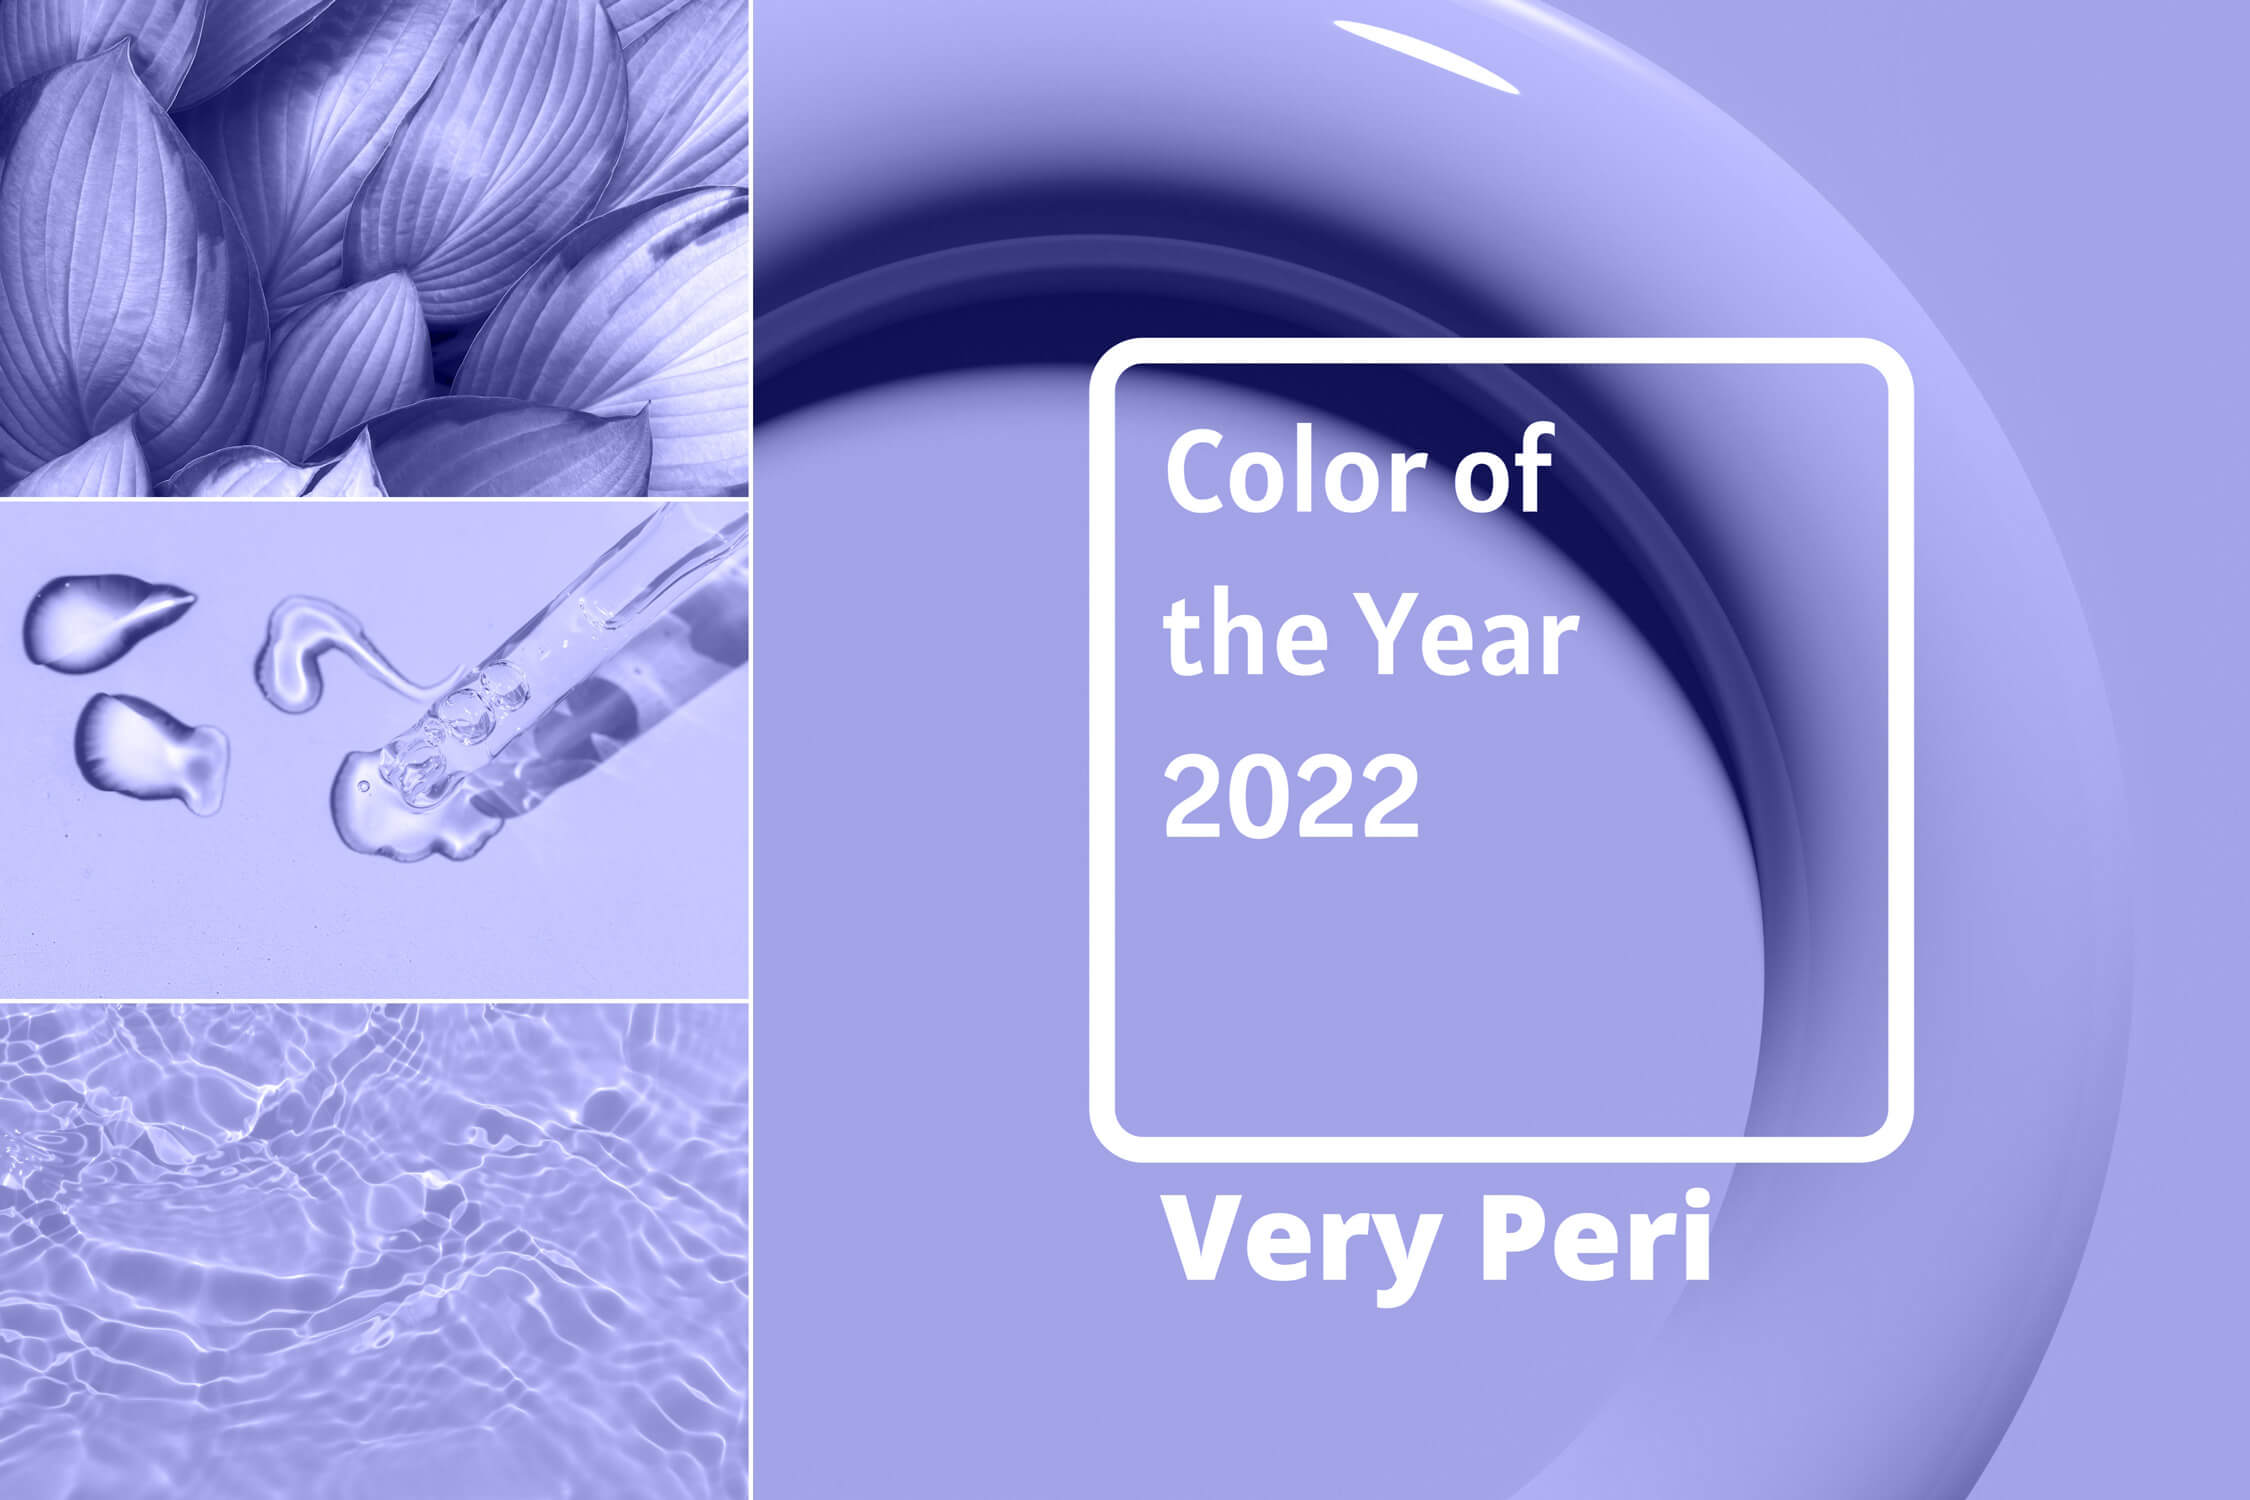 Kolor roku 2022 według Pantone